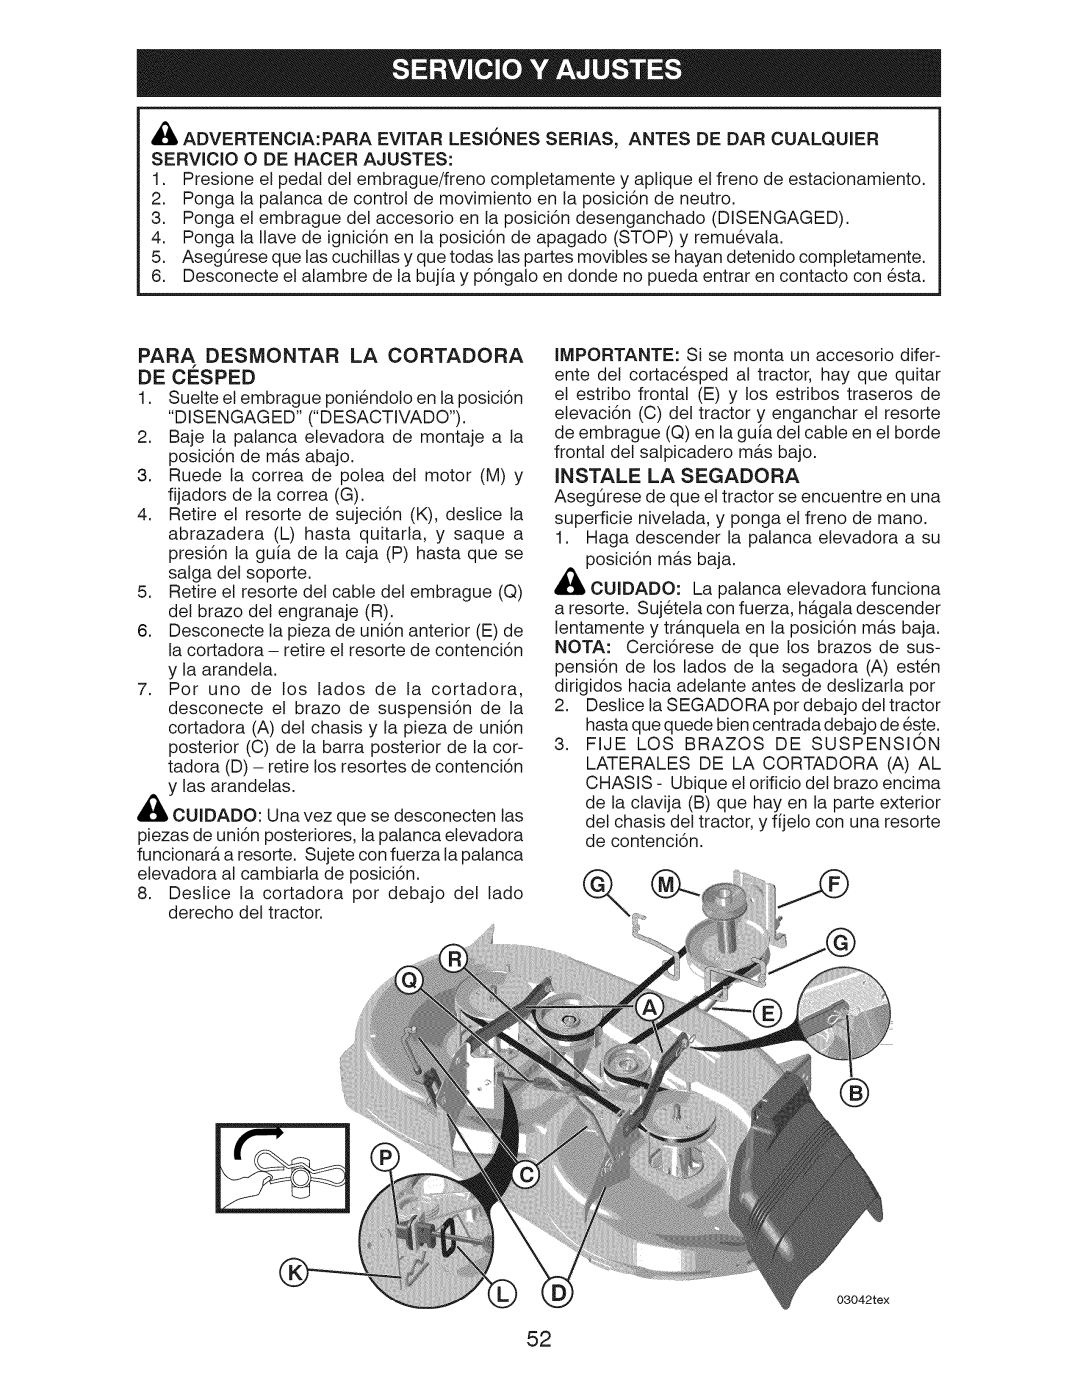 Craftsman 917.289240 owner manual De Cesped, Para Desmontar La Cortadora, Instale La Segadora 